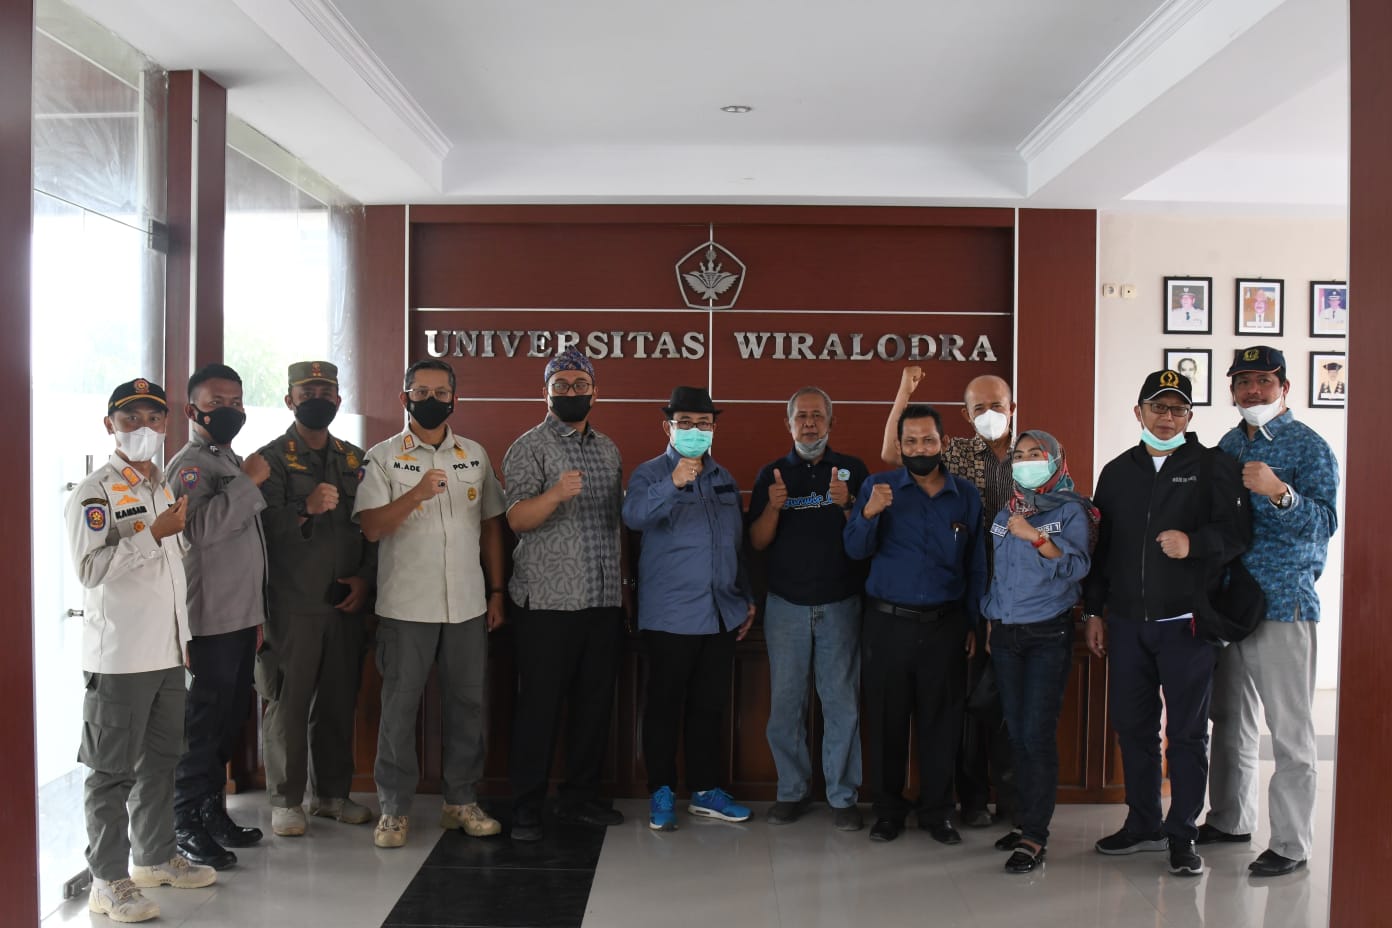 Anggota DPRD Jabar Sidkon Jampi ketika mengunjungi Universitas wiralodra untuk berdiskusi dalam penerapan protokol kesehatan dan target vaksin di Kabupaten Indramayu